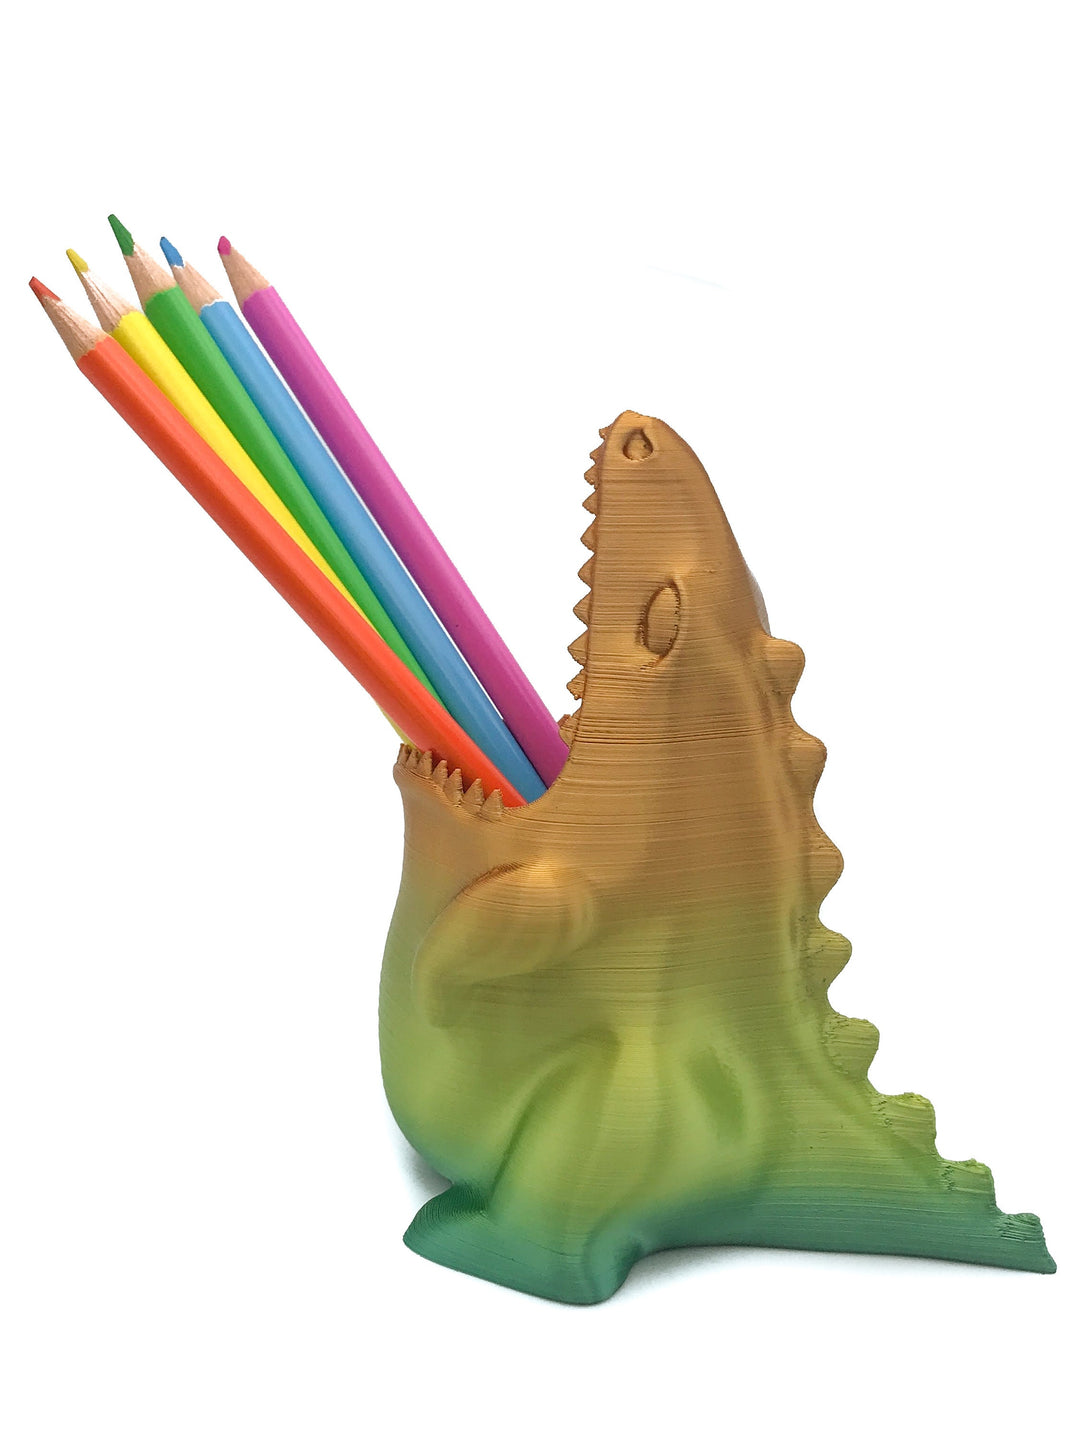 
  
  Dinosaur Pen/Pencil Holder | Gluttonosaurus, aka Gobbleosaurus
  
